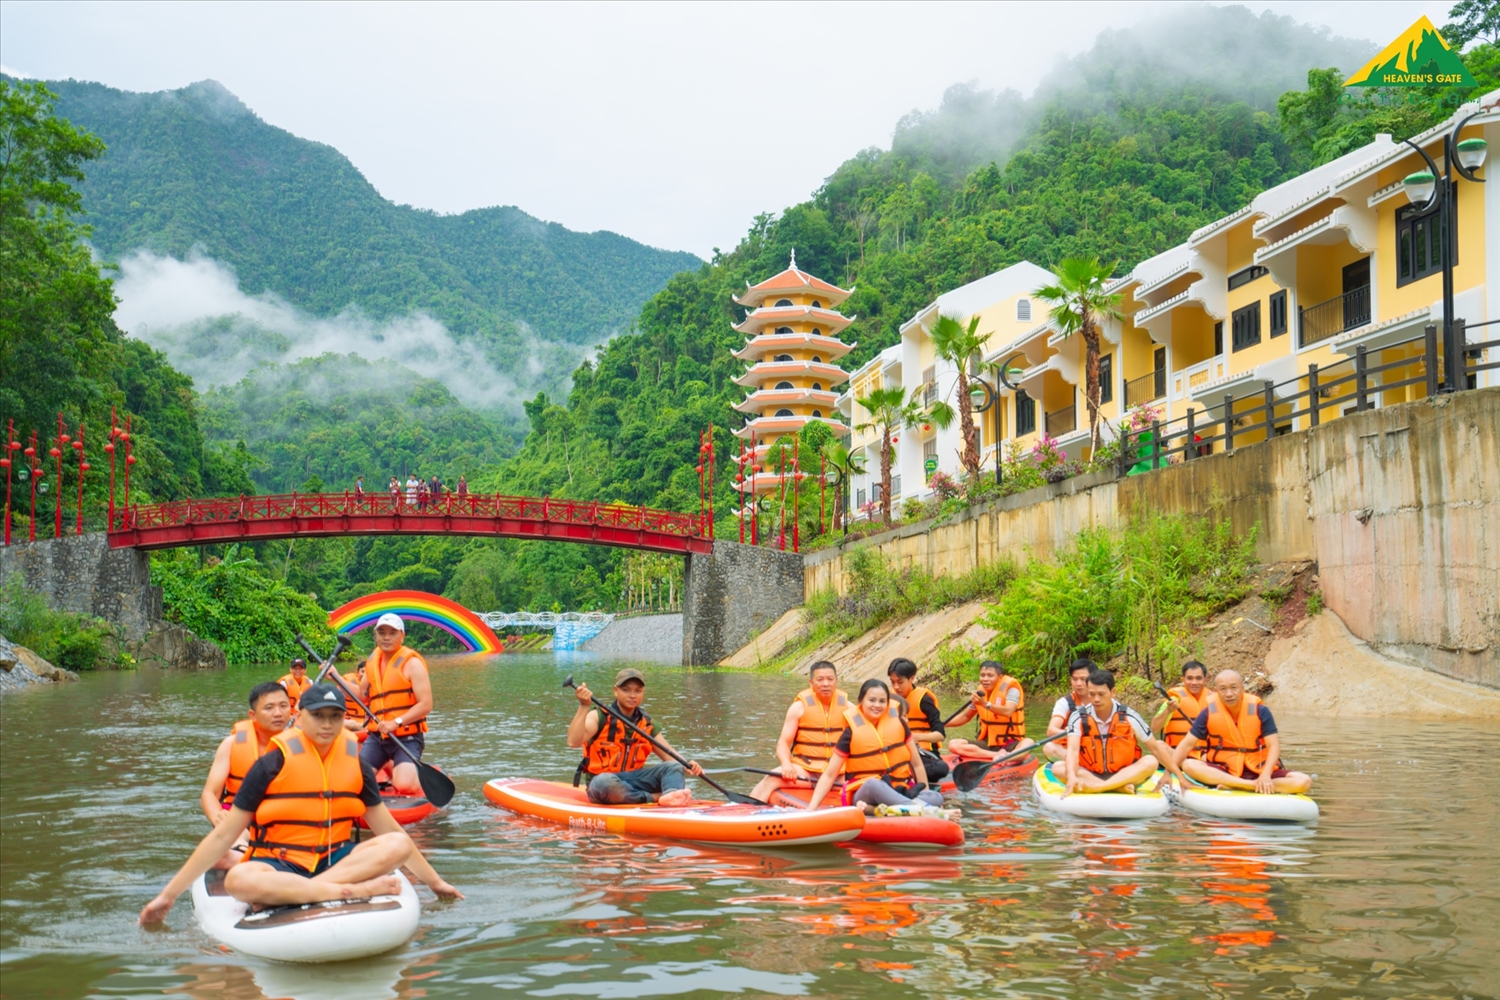 Khu Du lịch sinh thái Cổng Trời Đông Giang tạo nên điểm nhấn du lịch cho huyện miền núi